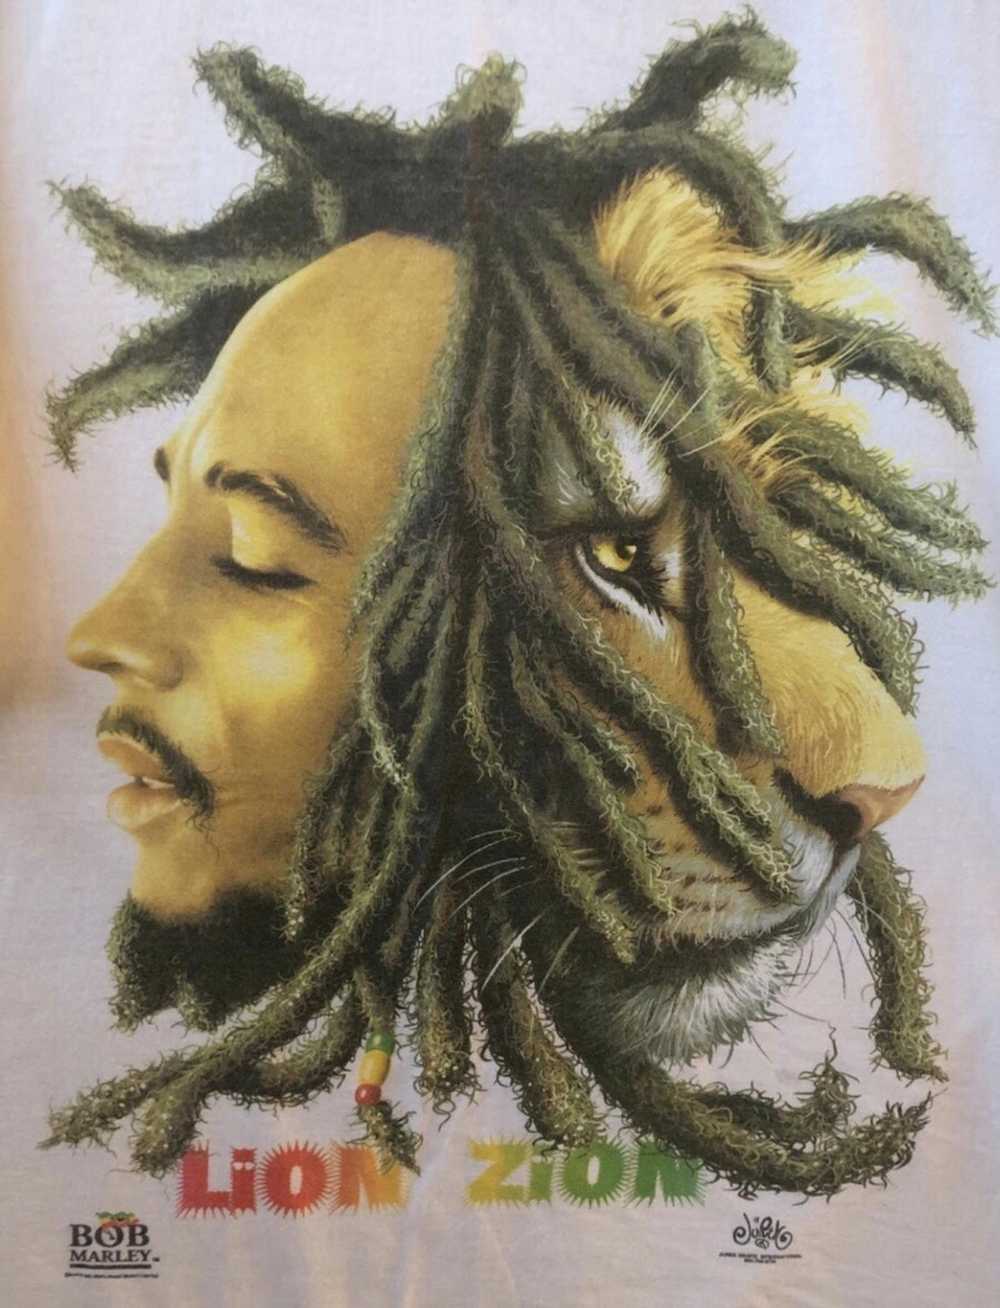 Band Tees × Bob Marley × Rock Band Bob Marley shi… - image 2